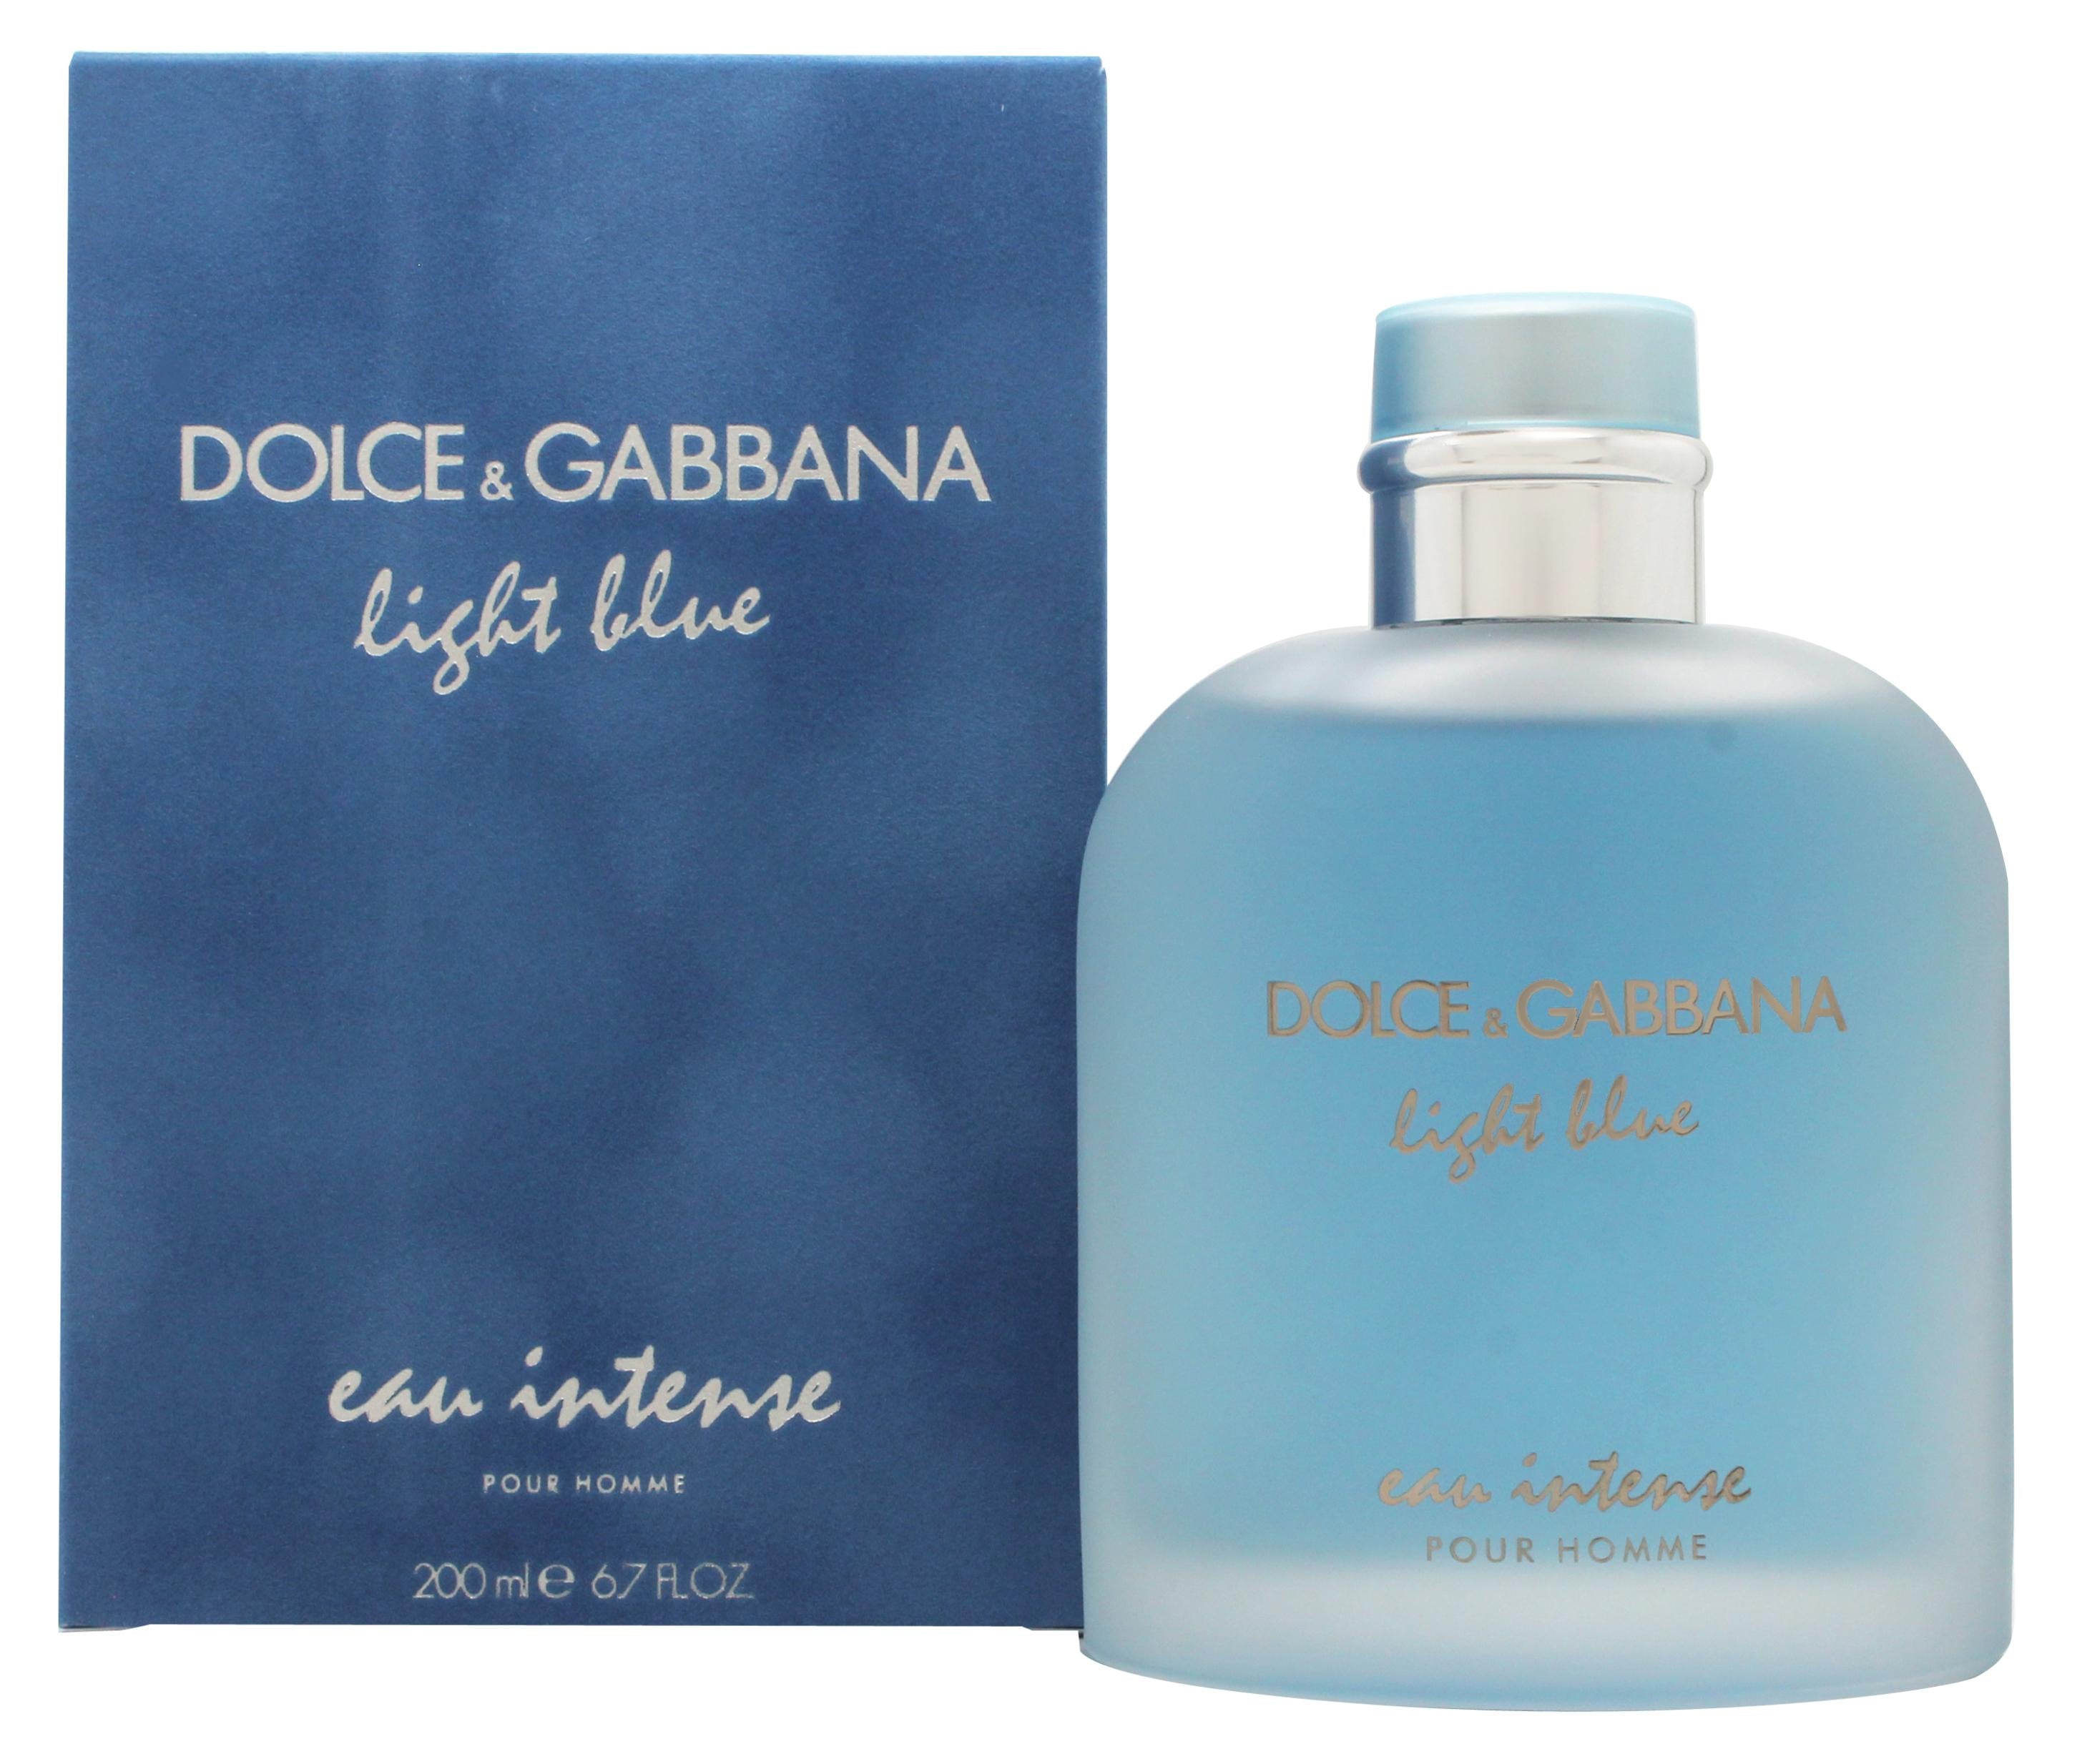 View Dolce Gabbana Light Blue Eau Intense Pour Homme Eau de Parfum 200ml Sprej information